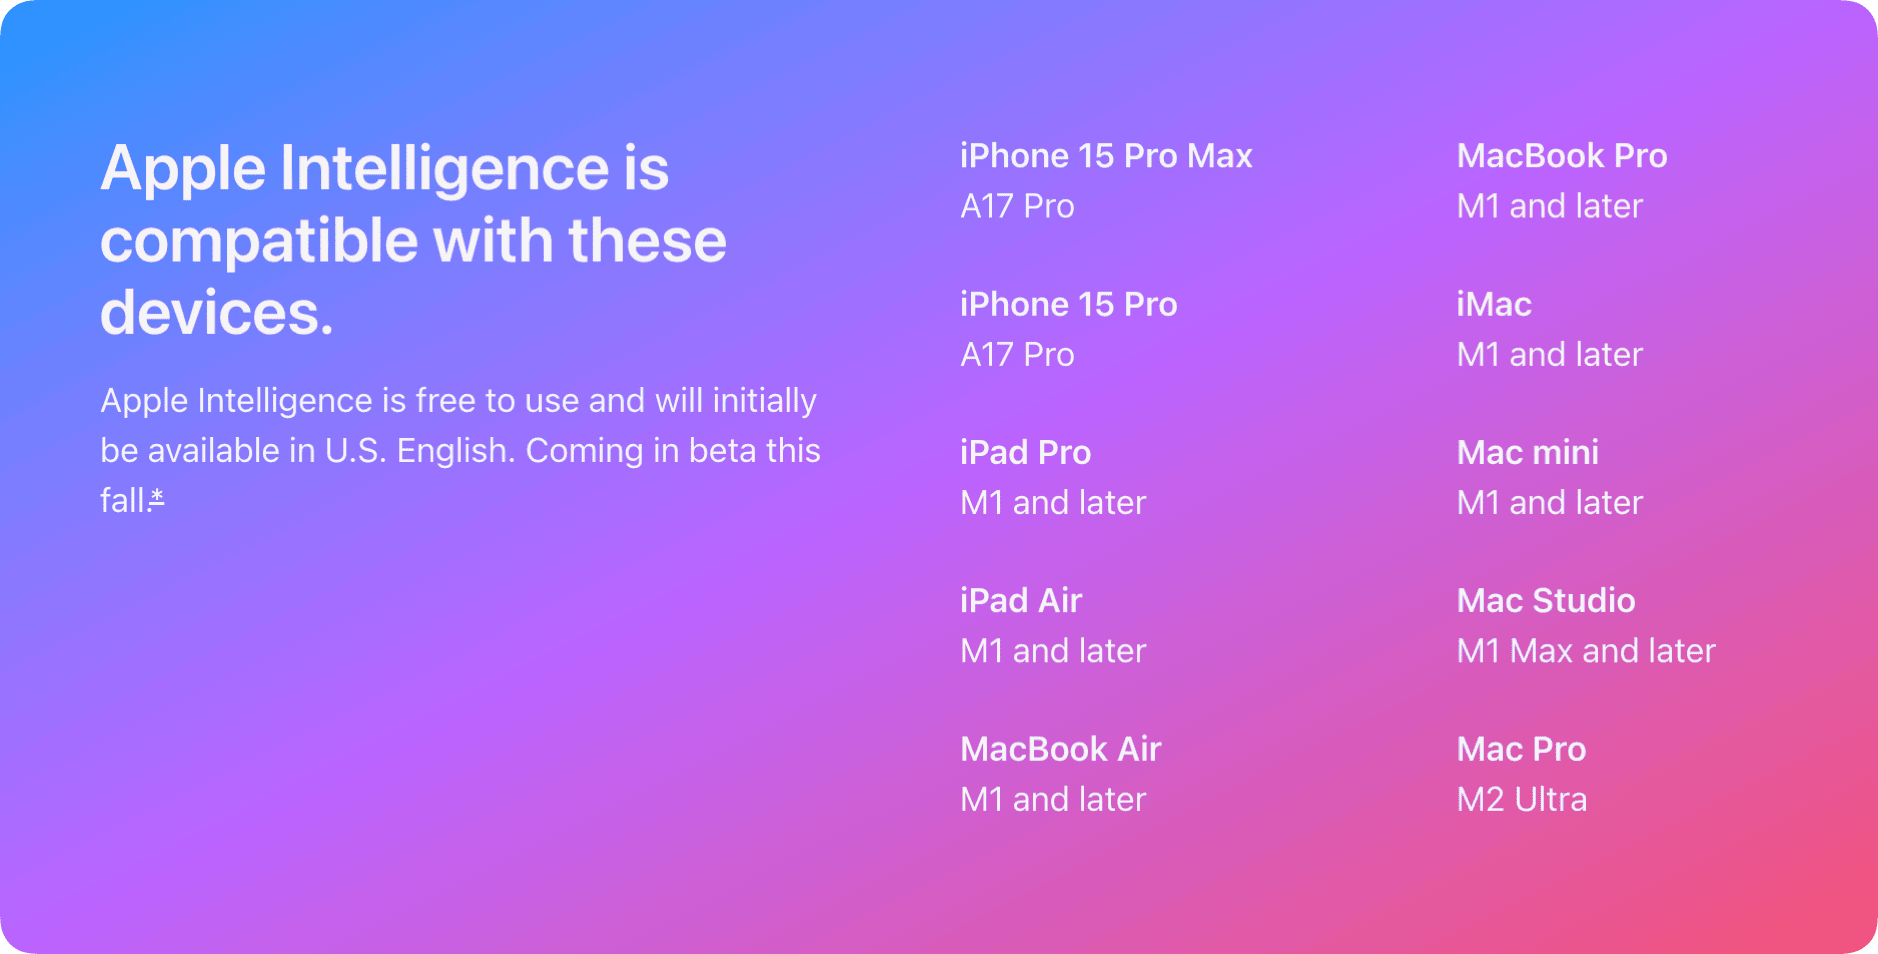 Das Bild zeigt eine Liste von Geräten, die mit Apple Intelligence kompatibel sind. Diese Geräte umfassen verschiedene Modelle von iPhone, iPad, MacBook, iMac, Mac mini, Mac Studio und Mac Pro.